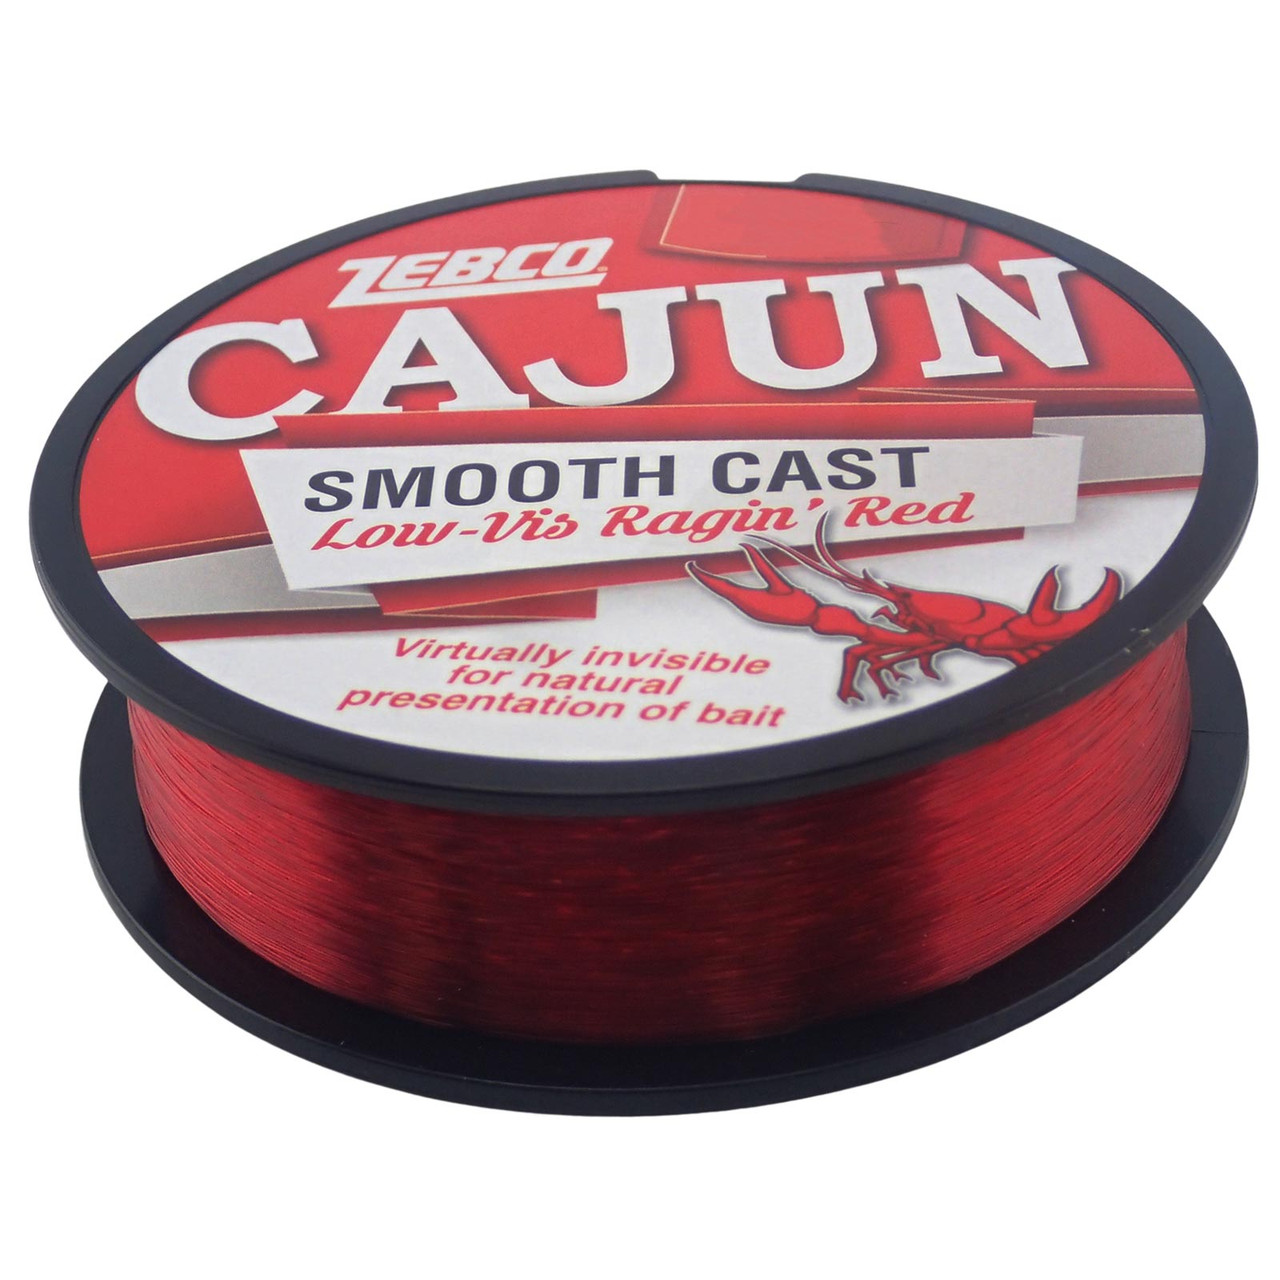 Cajun Low-Vis Ragin' Red Line